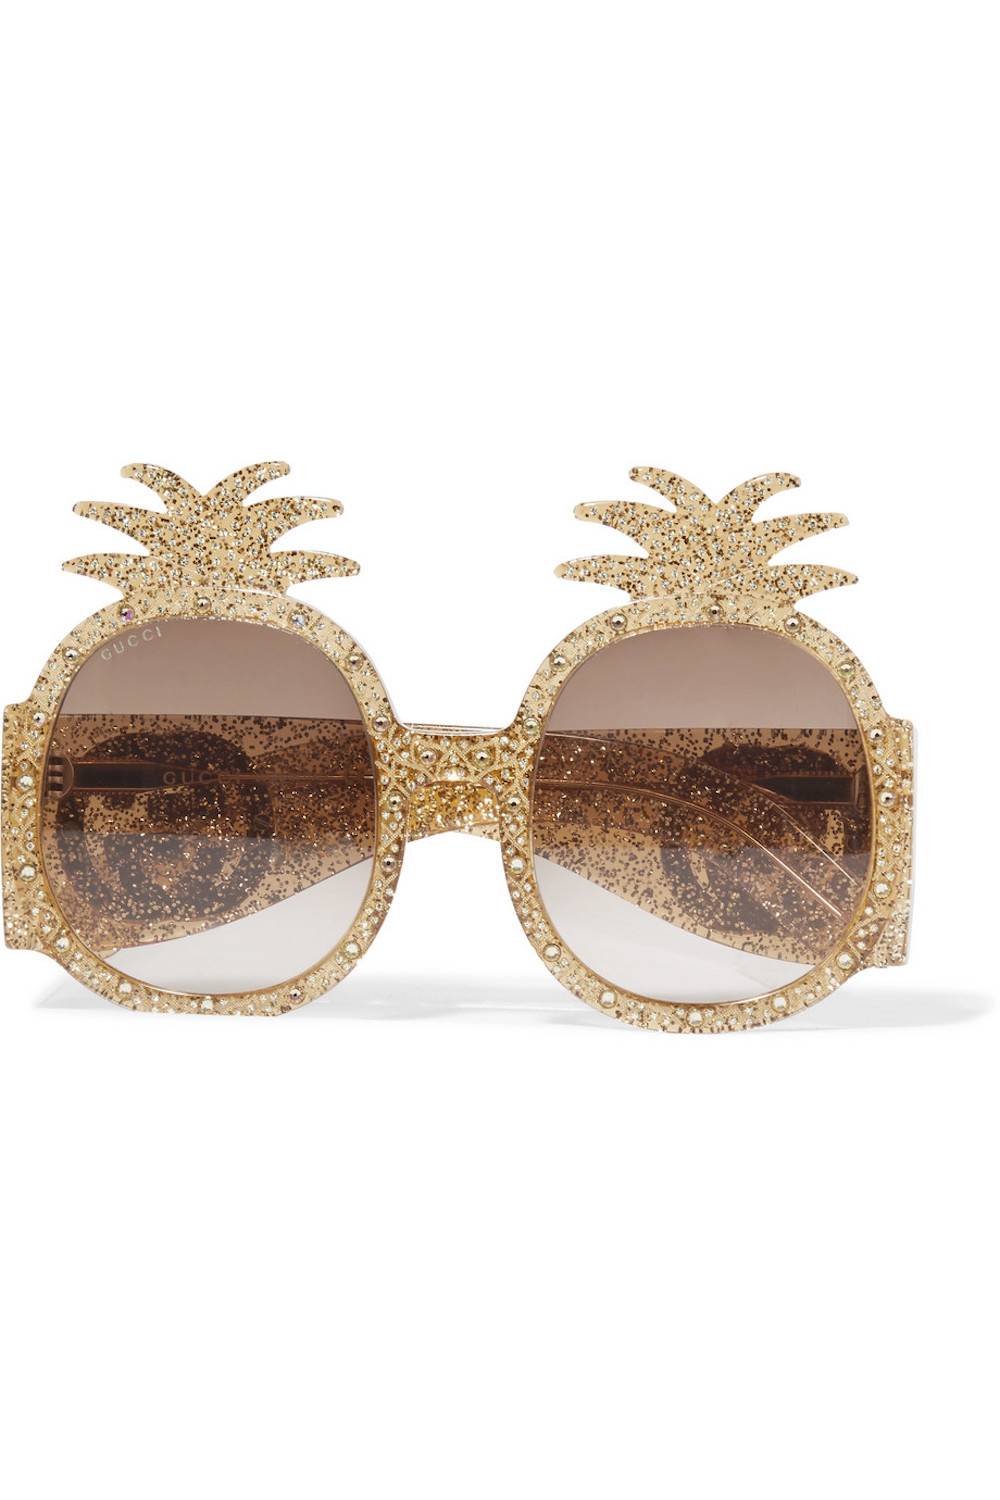 Okulary Gucci, cena: 2500 zł (Fot. materiały prasowe)